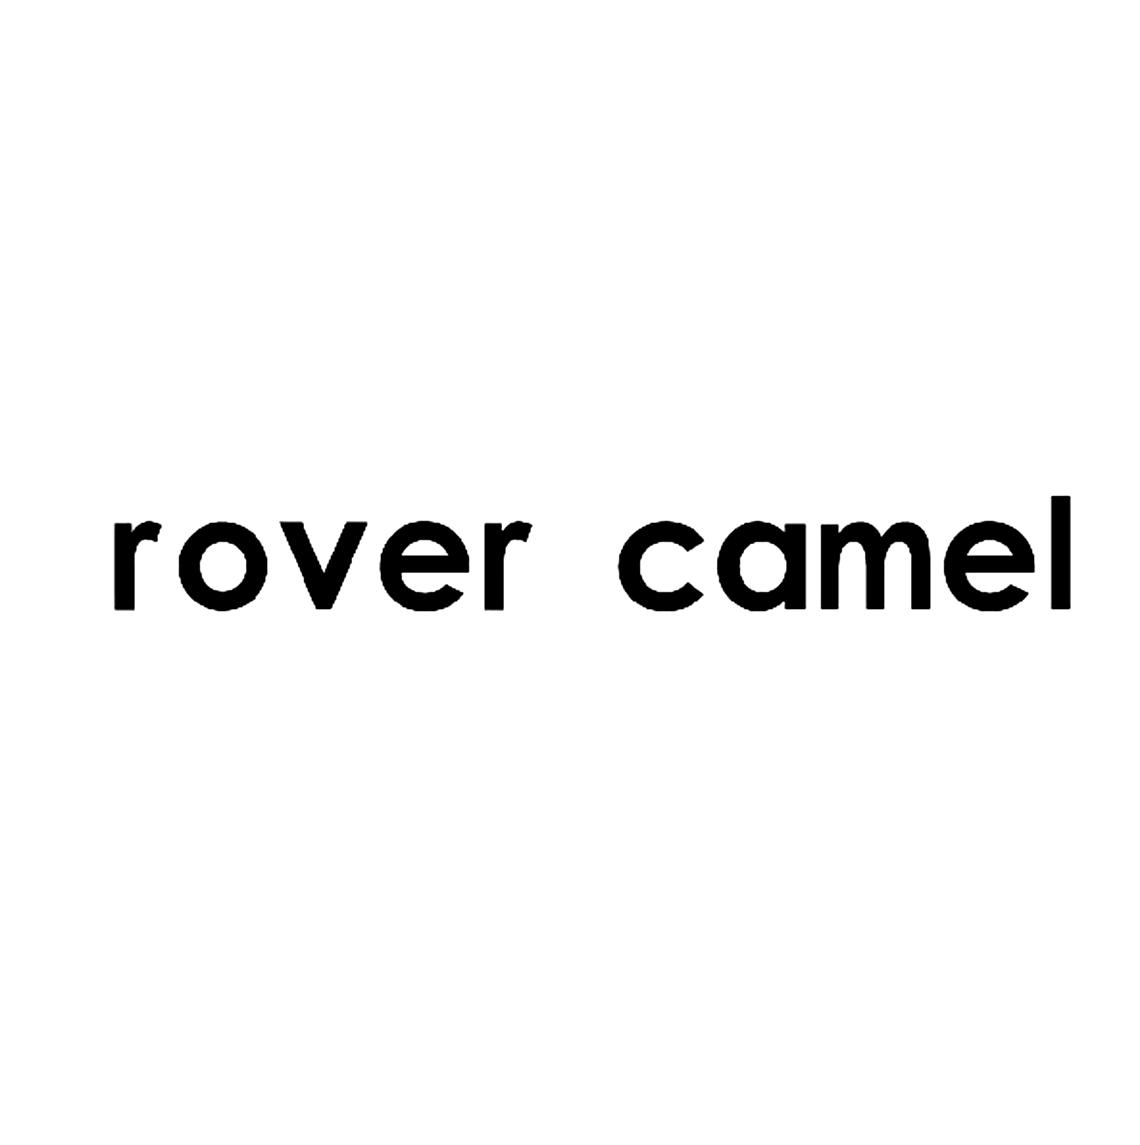 ROVER CAMEL